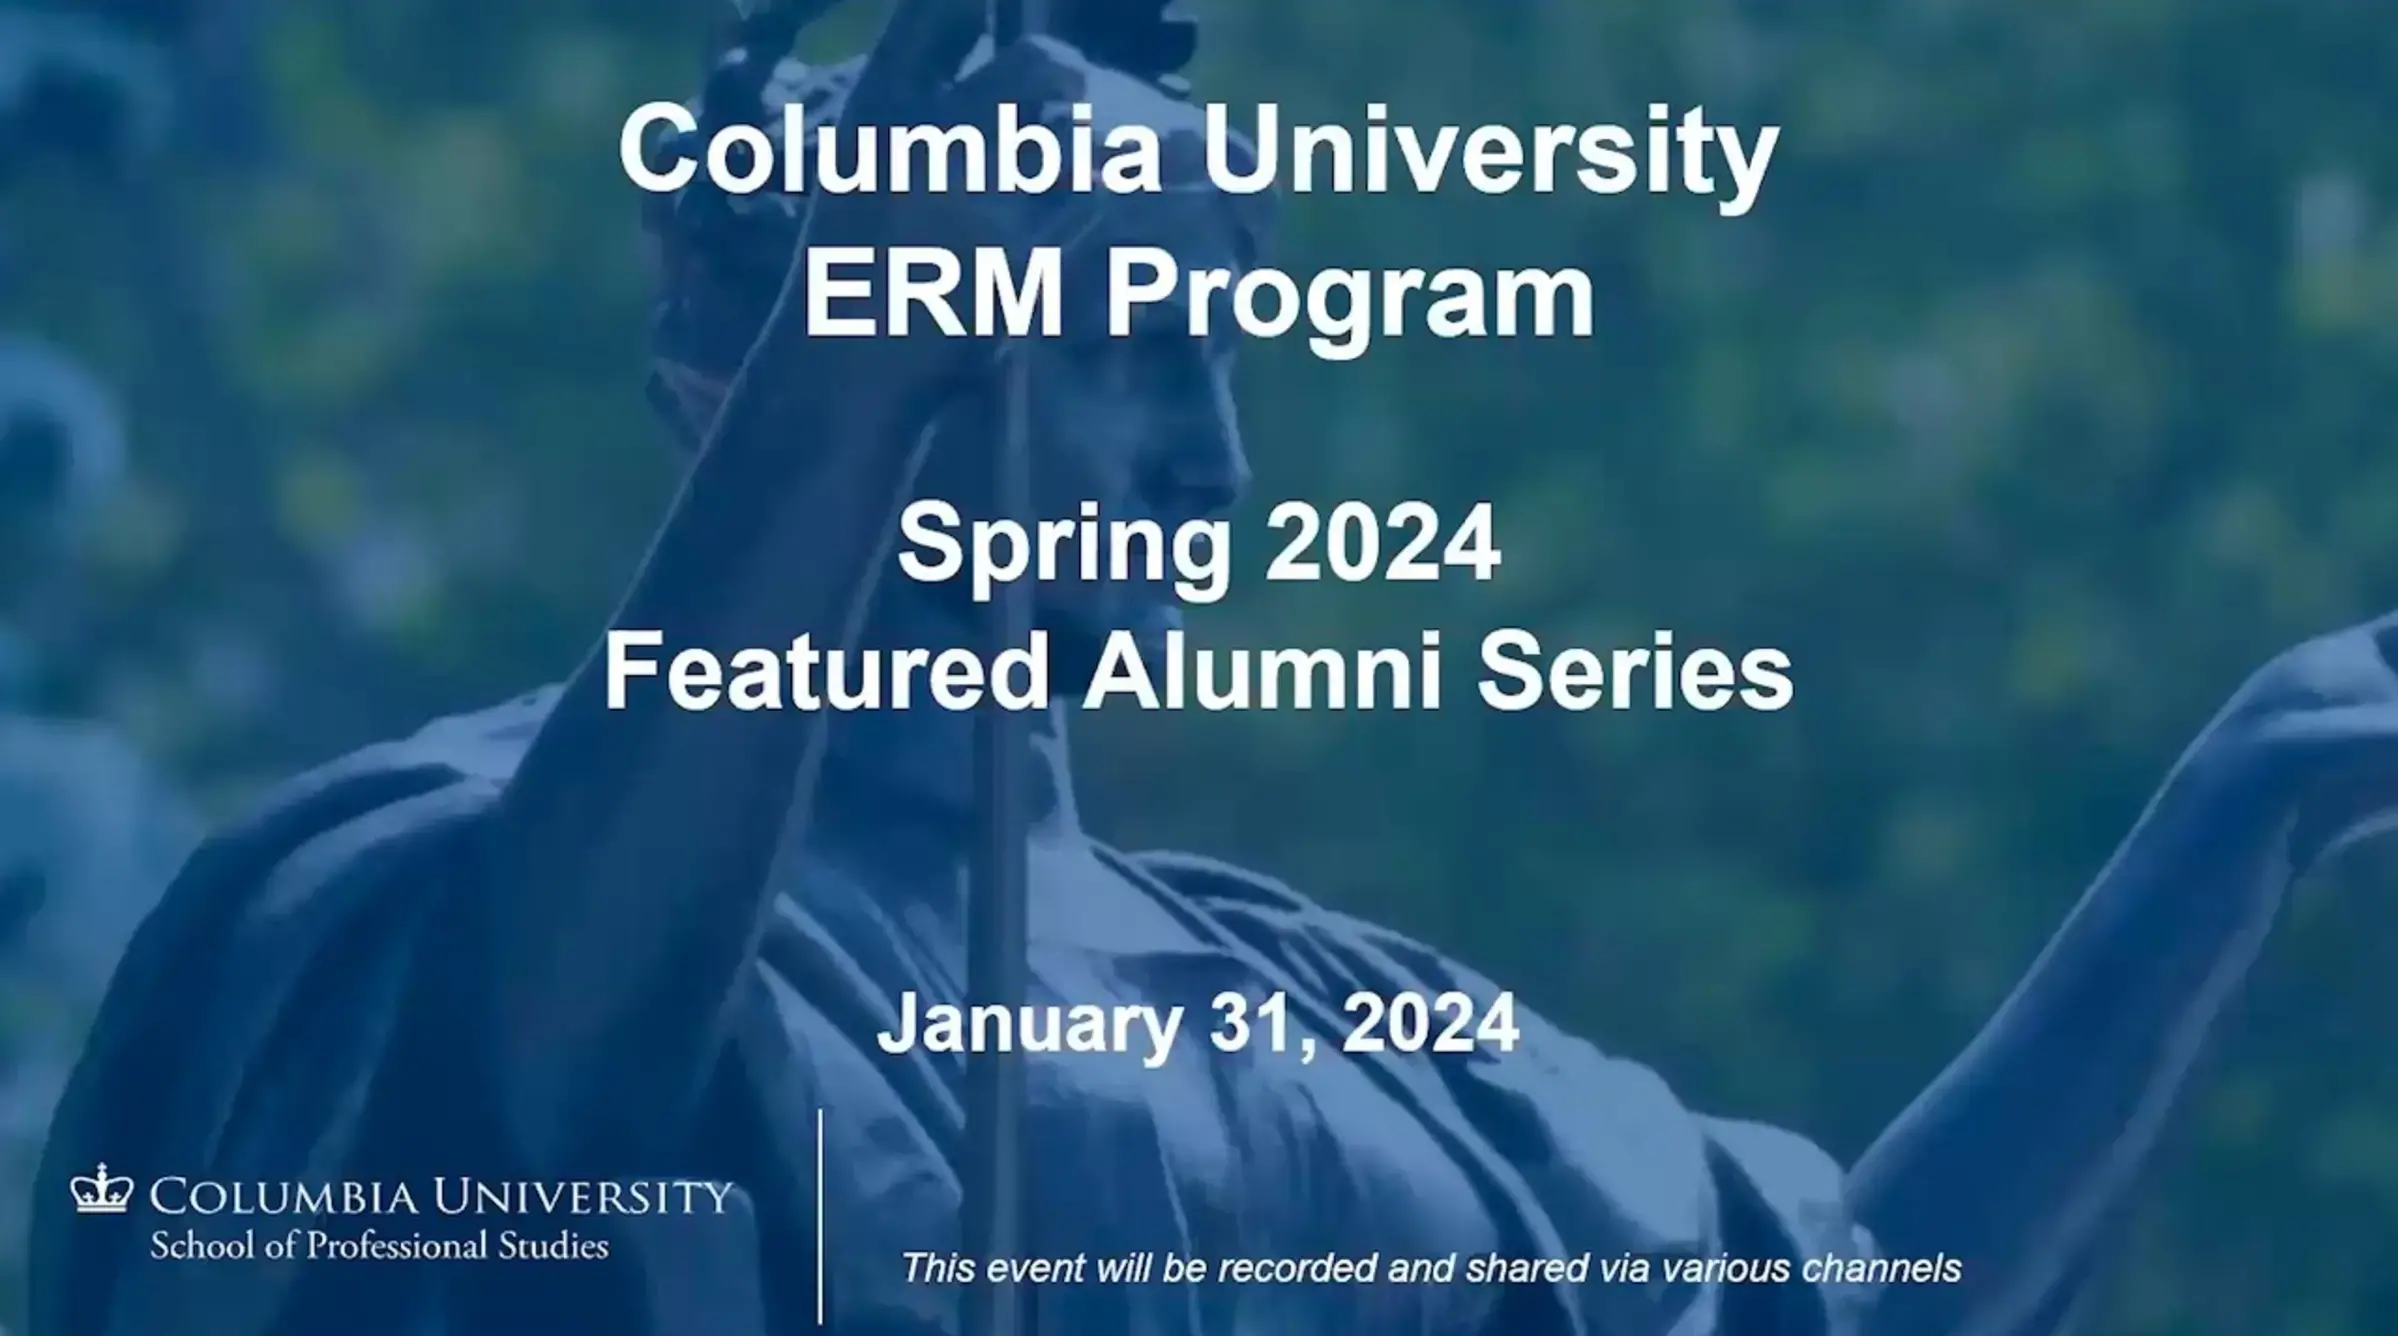 Spring 2024 Featured Alumni Series